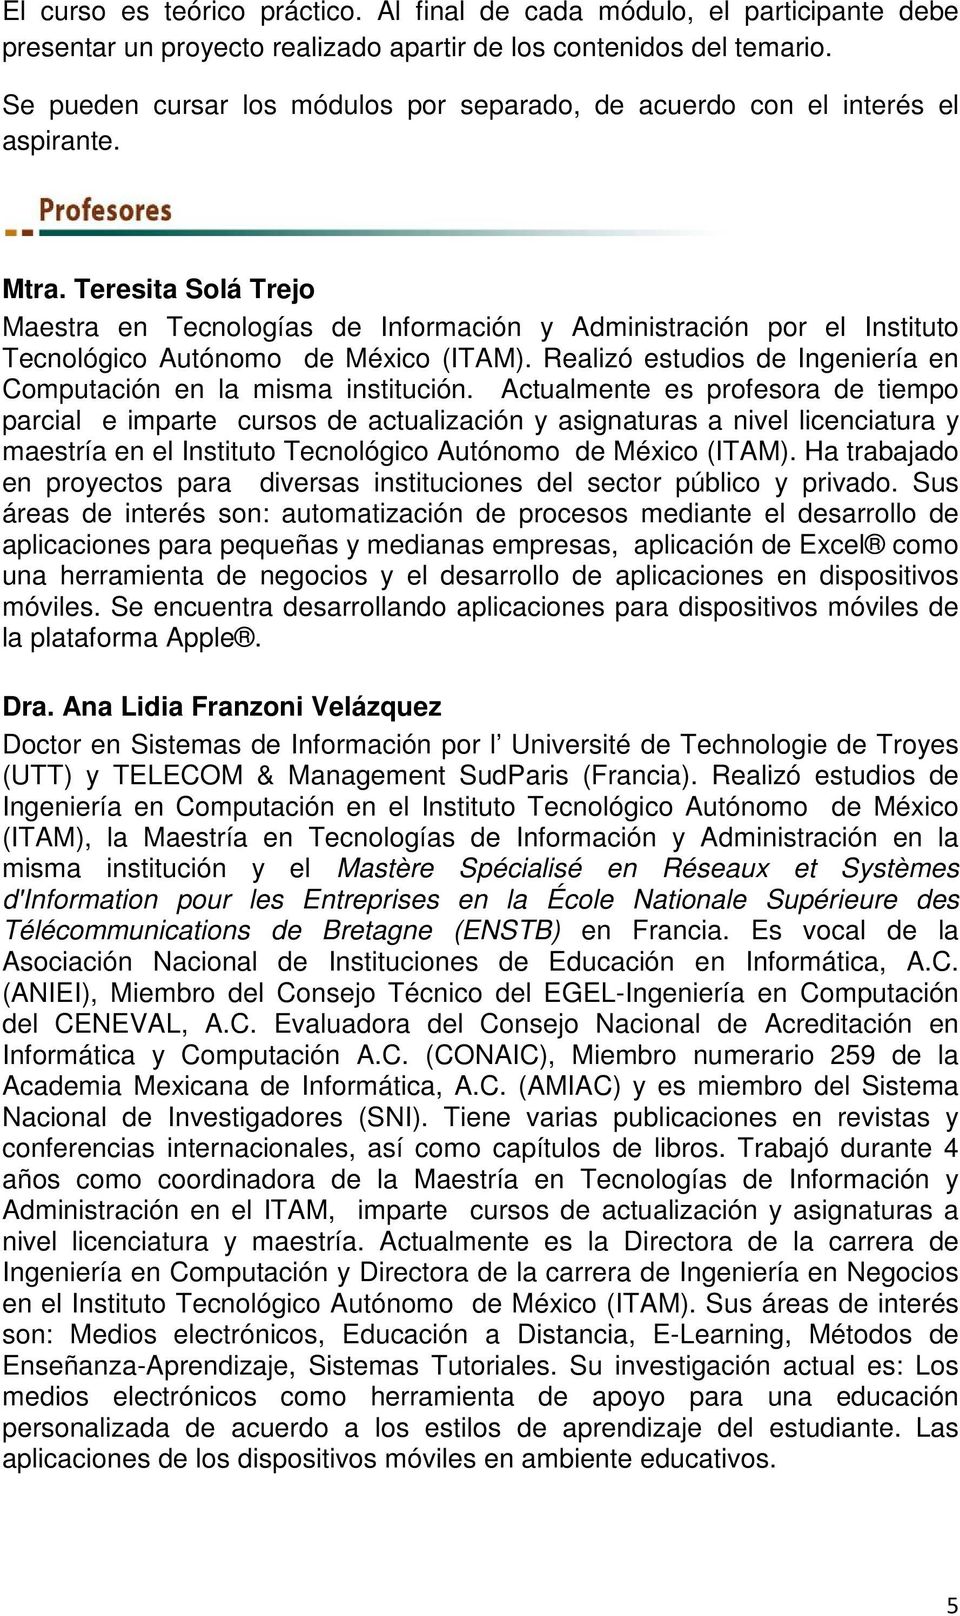 Teresita Solá Trejo Maestra en Tecnologías de Información y Administración por el Instituto Tecnológico Autónomo de México (ITAM).